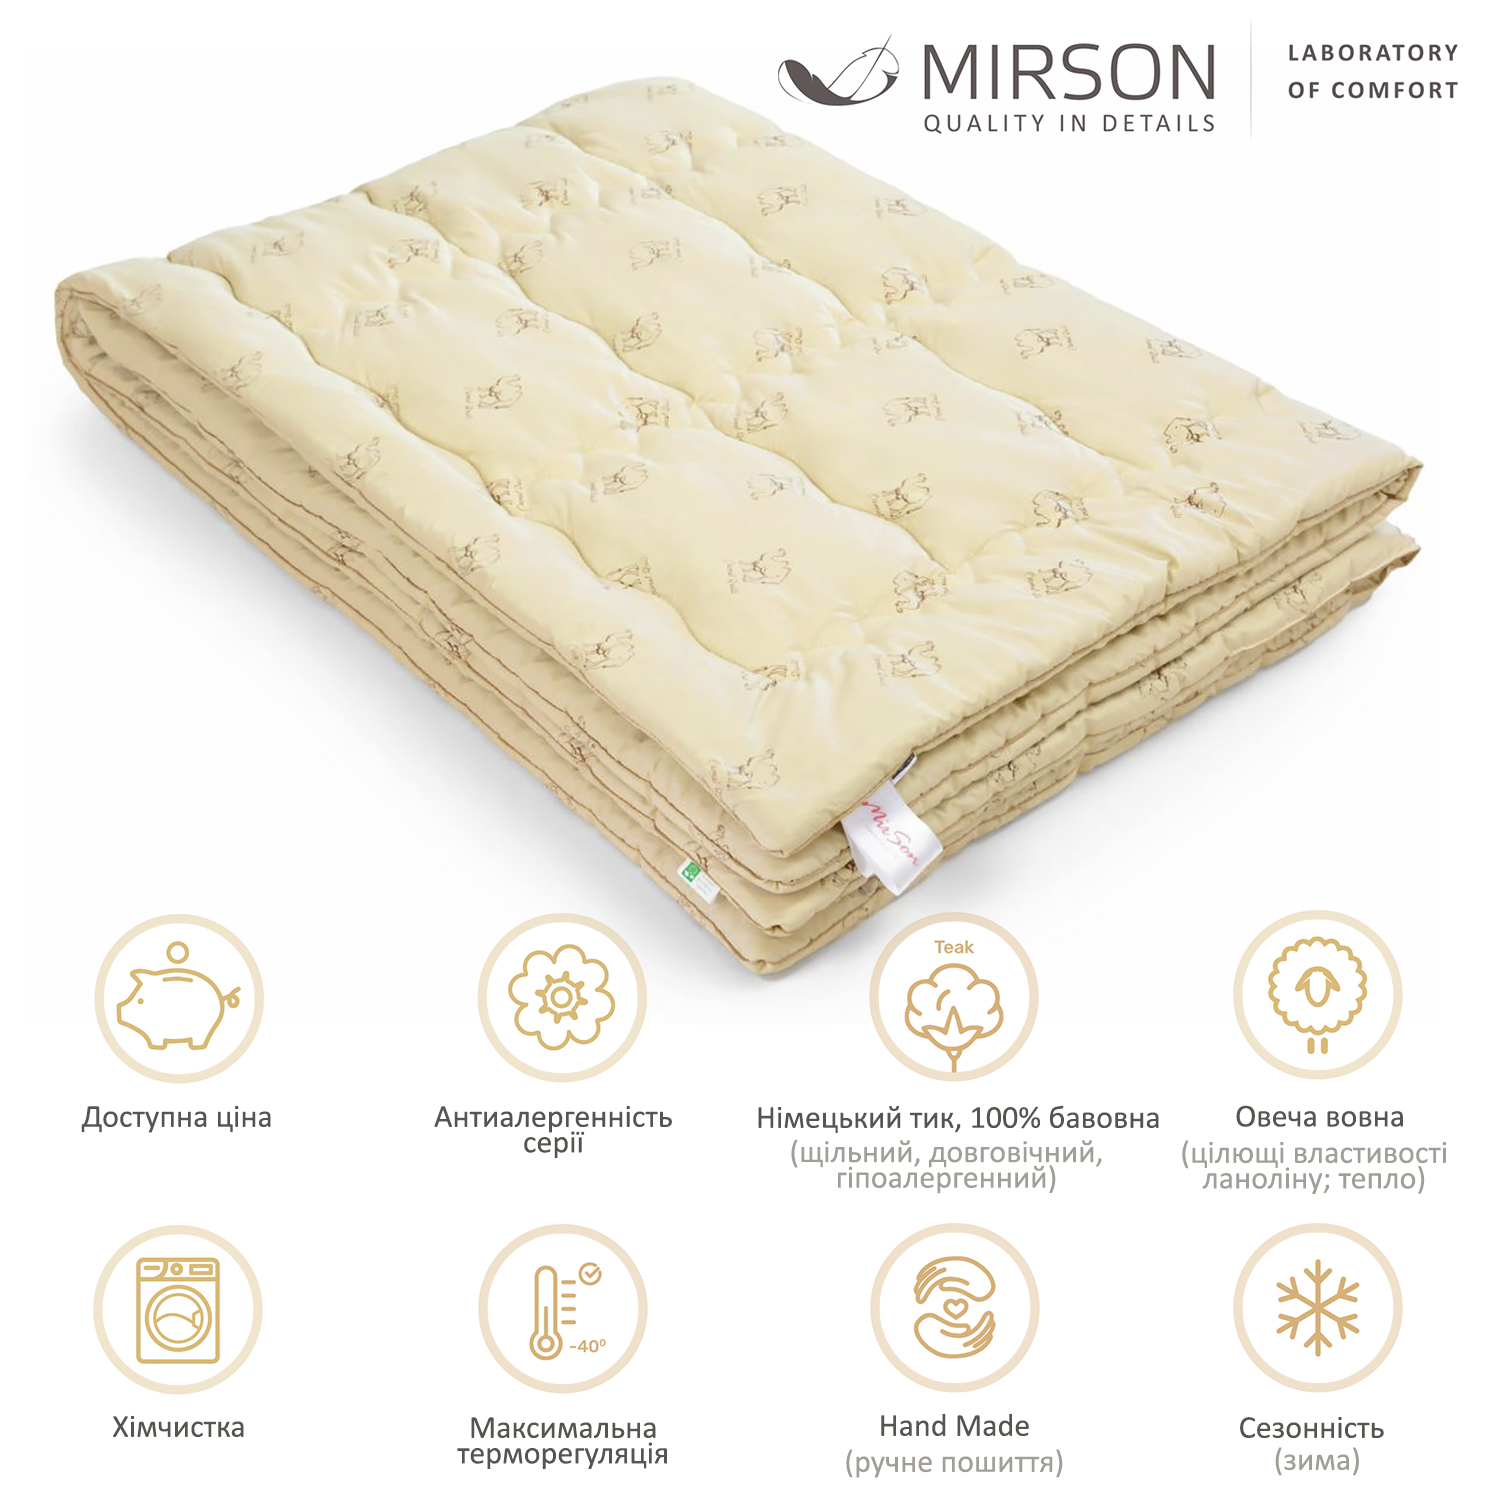 Одеяло шерстяное MirSon Gold Camel Hand Made №175, зимнее, 220x240 см, кремовое - фото 4